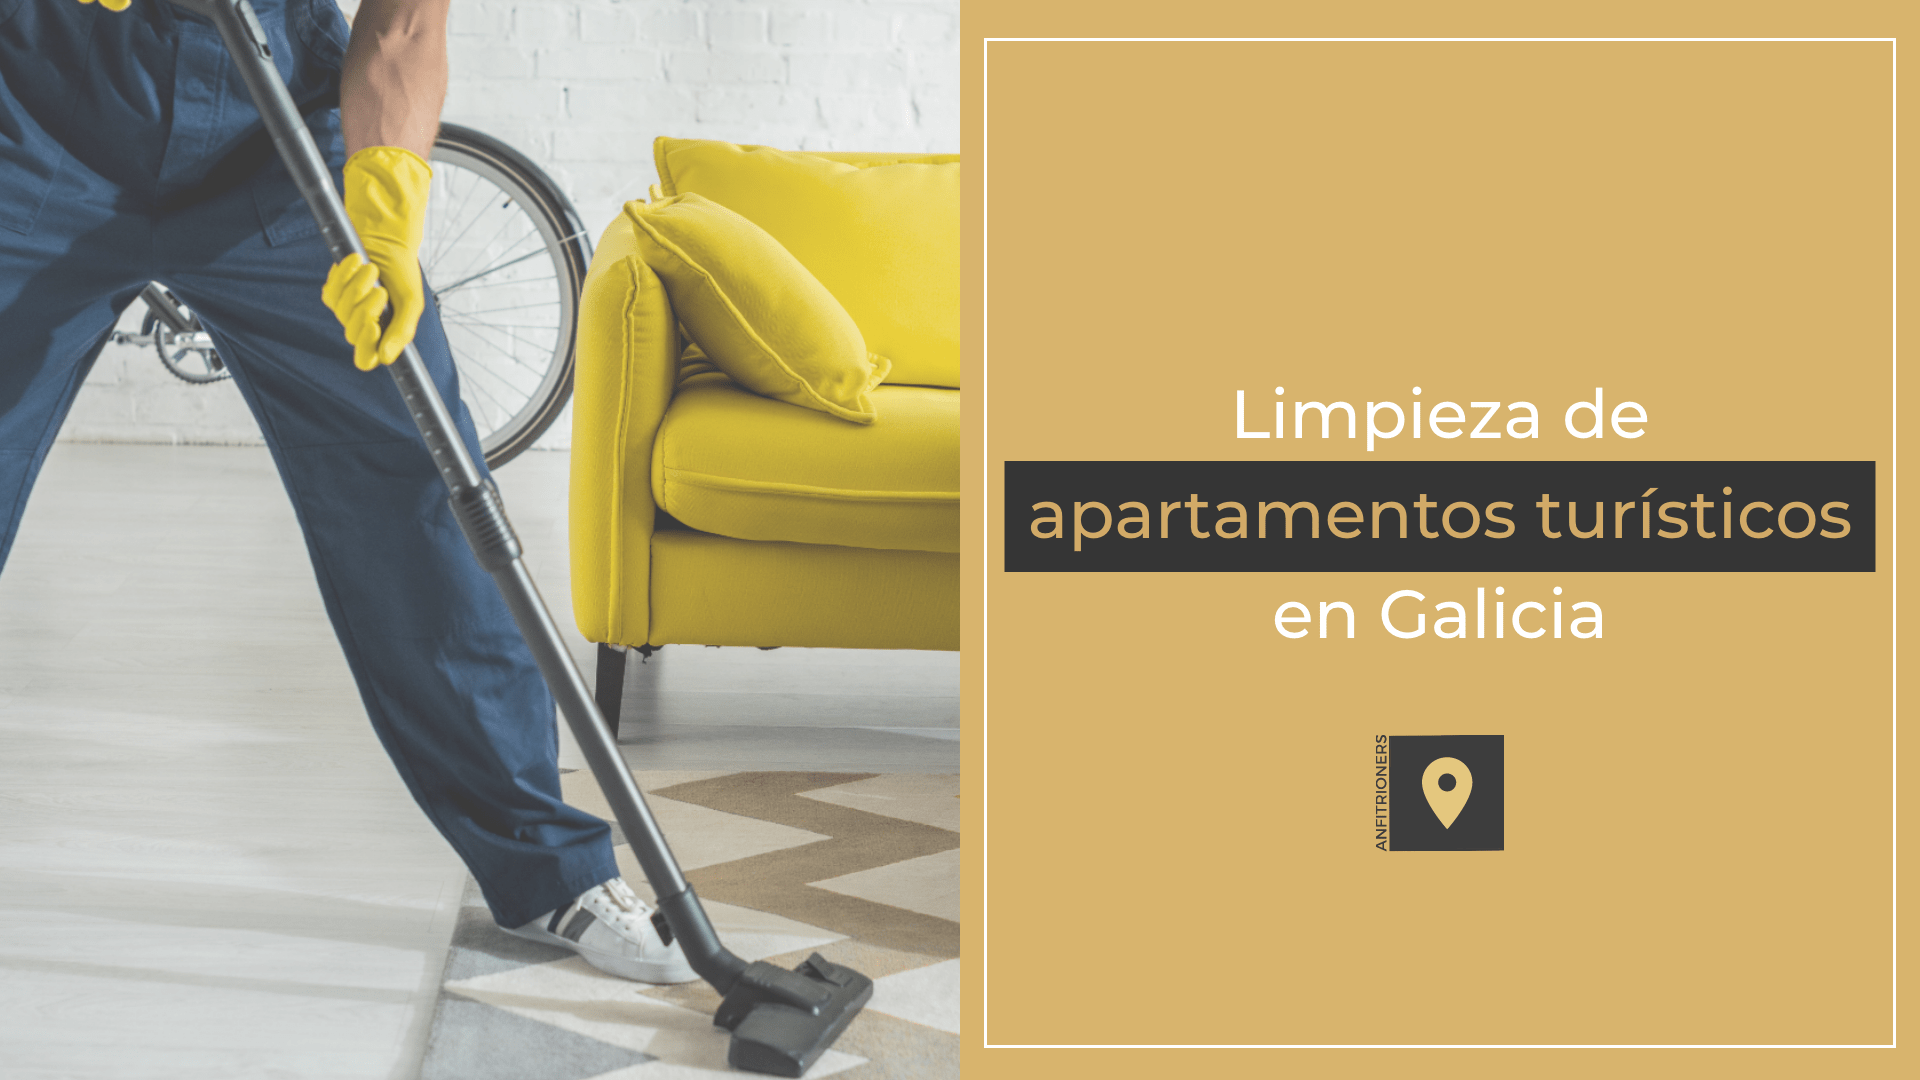 Precio de limpieza de apartamentos turísticos en Galicia: ¿Cuánto cuesta?